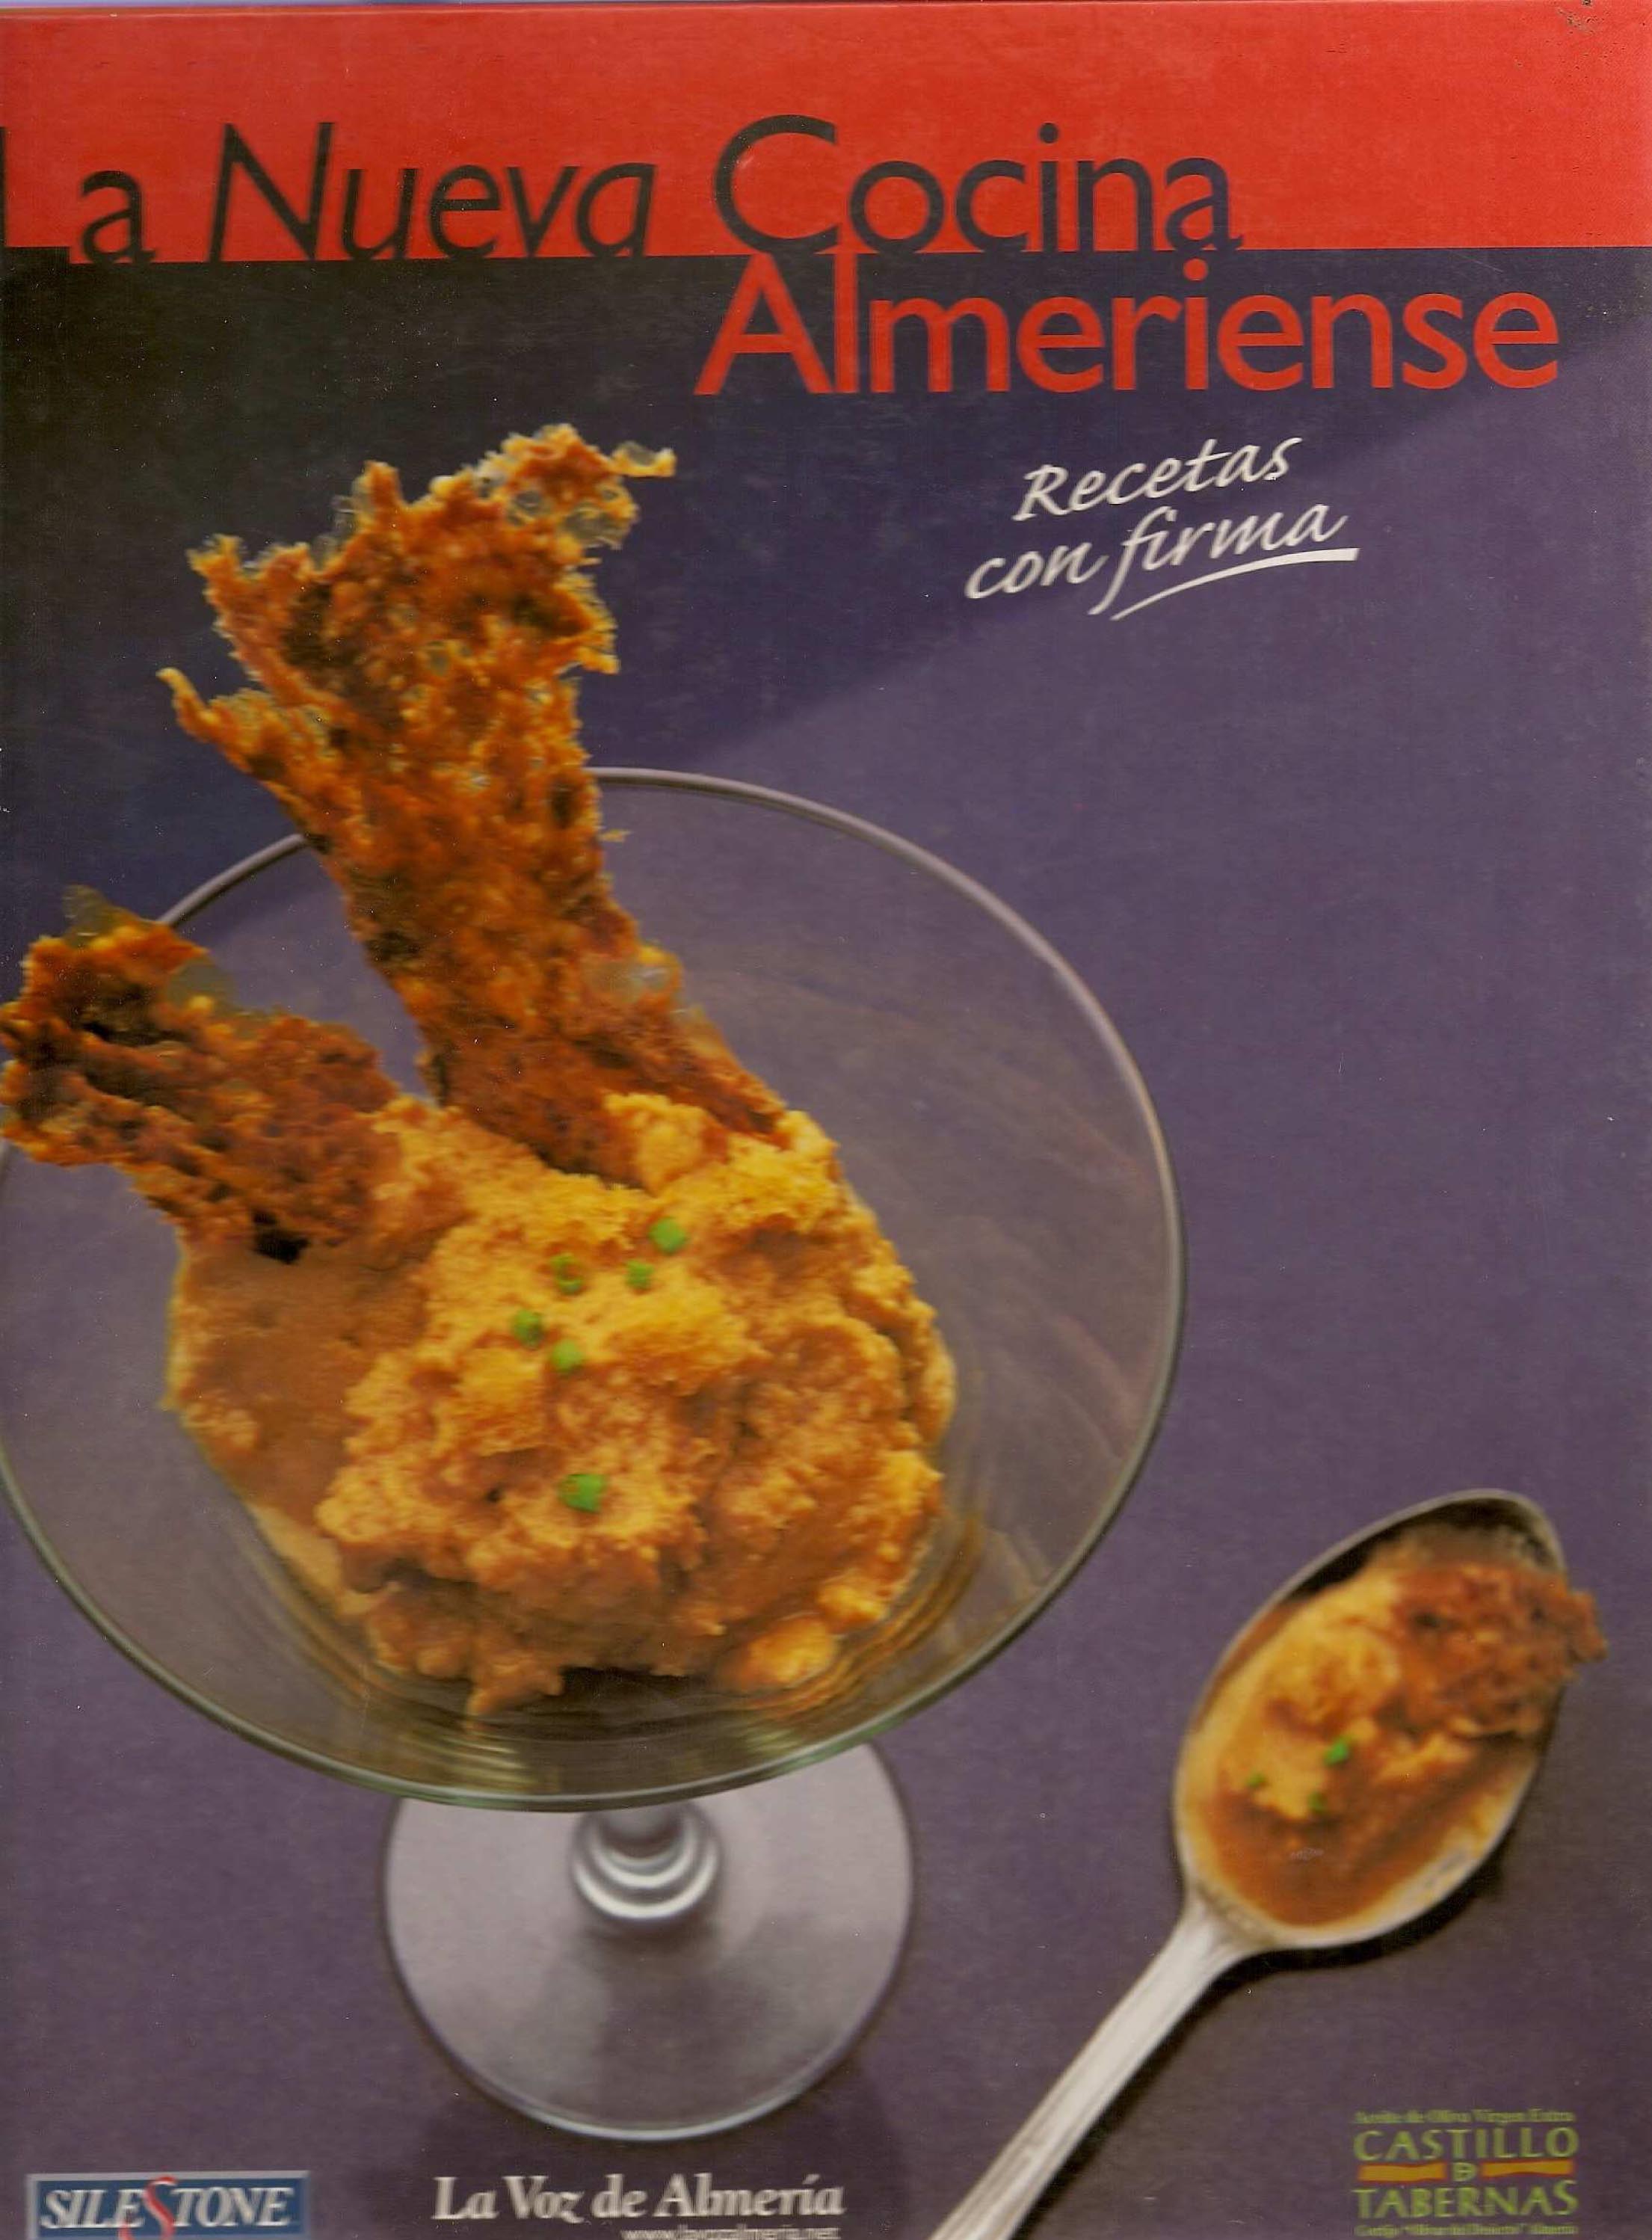 La Nueva Cocina Almeriense. (2000)